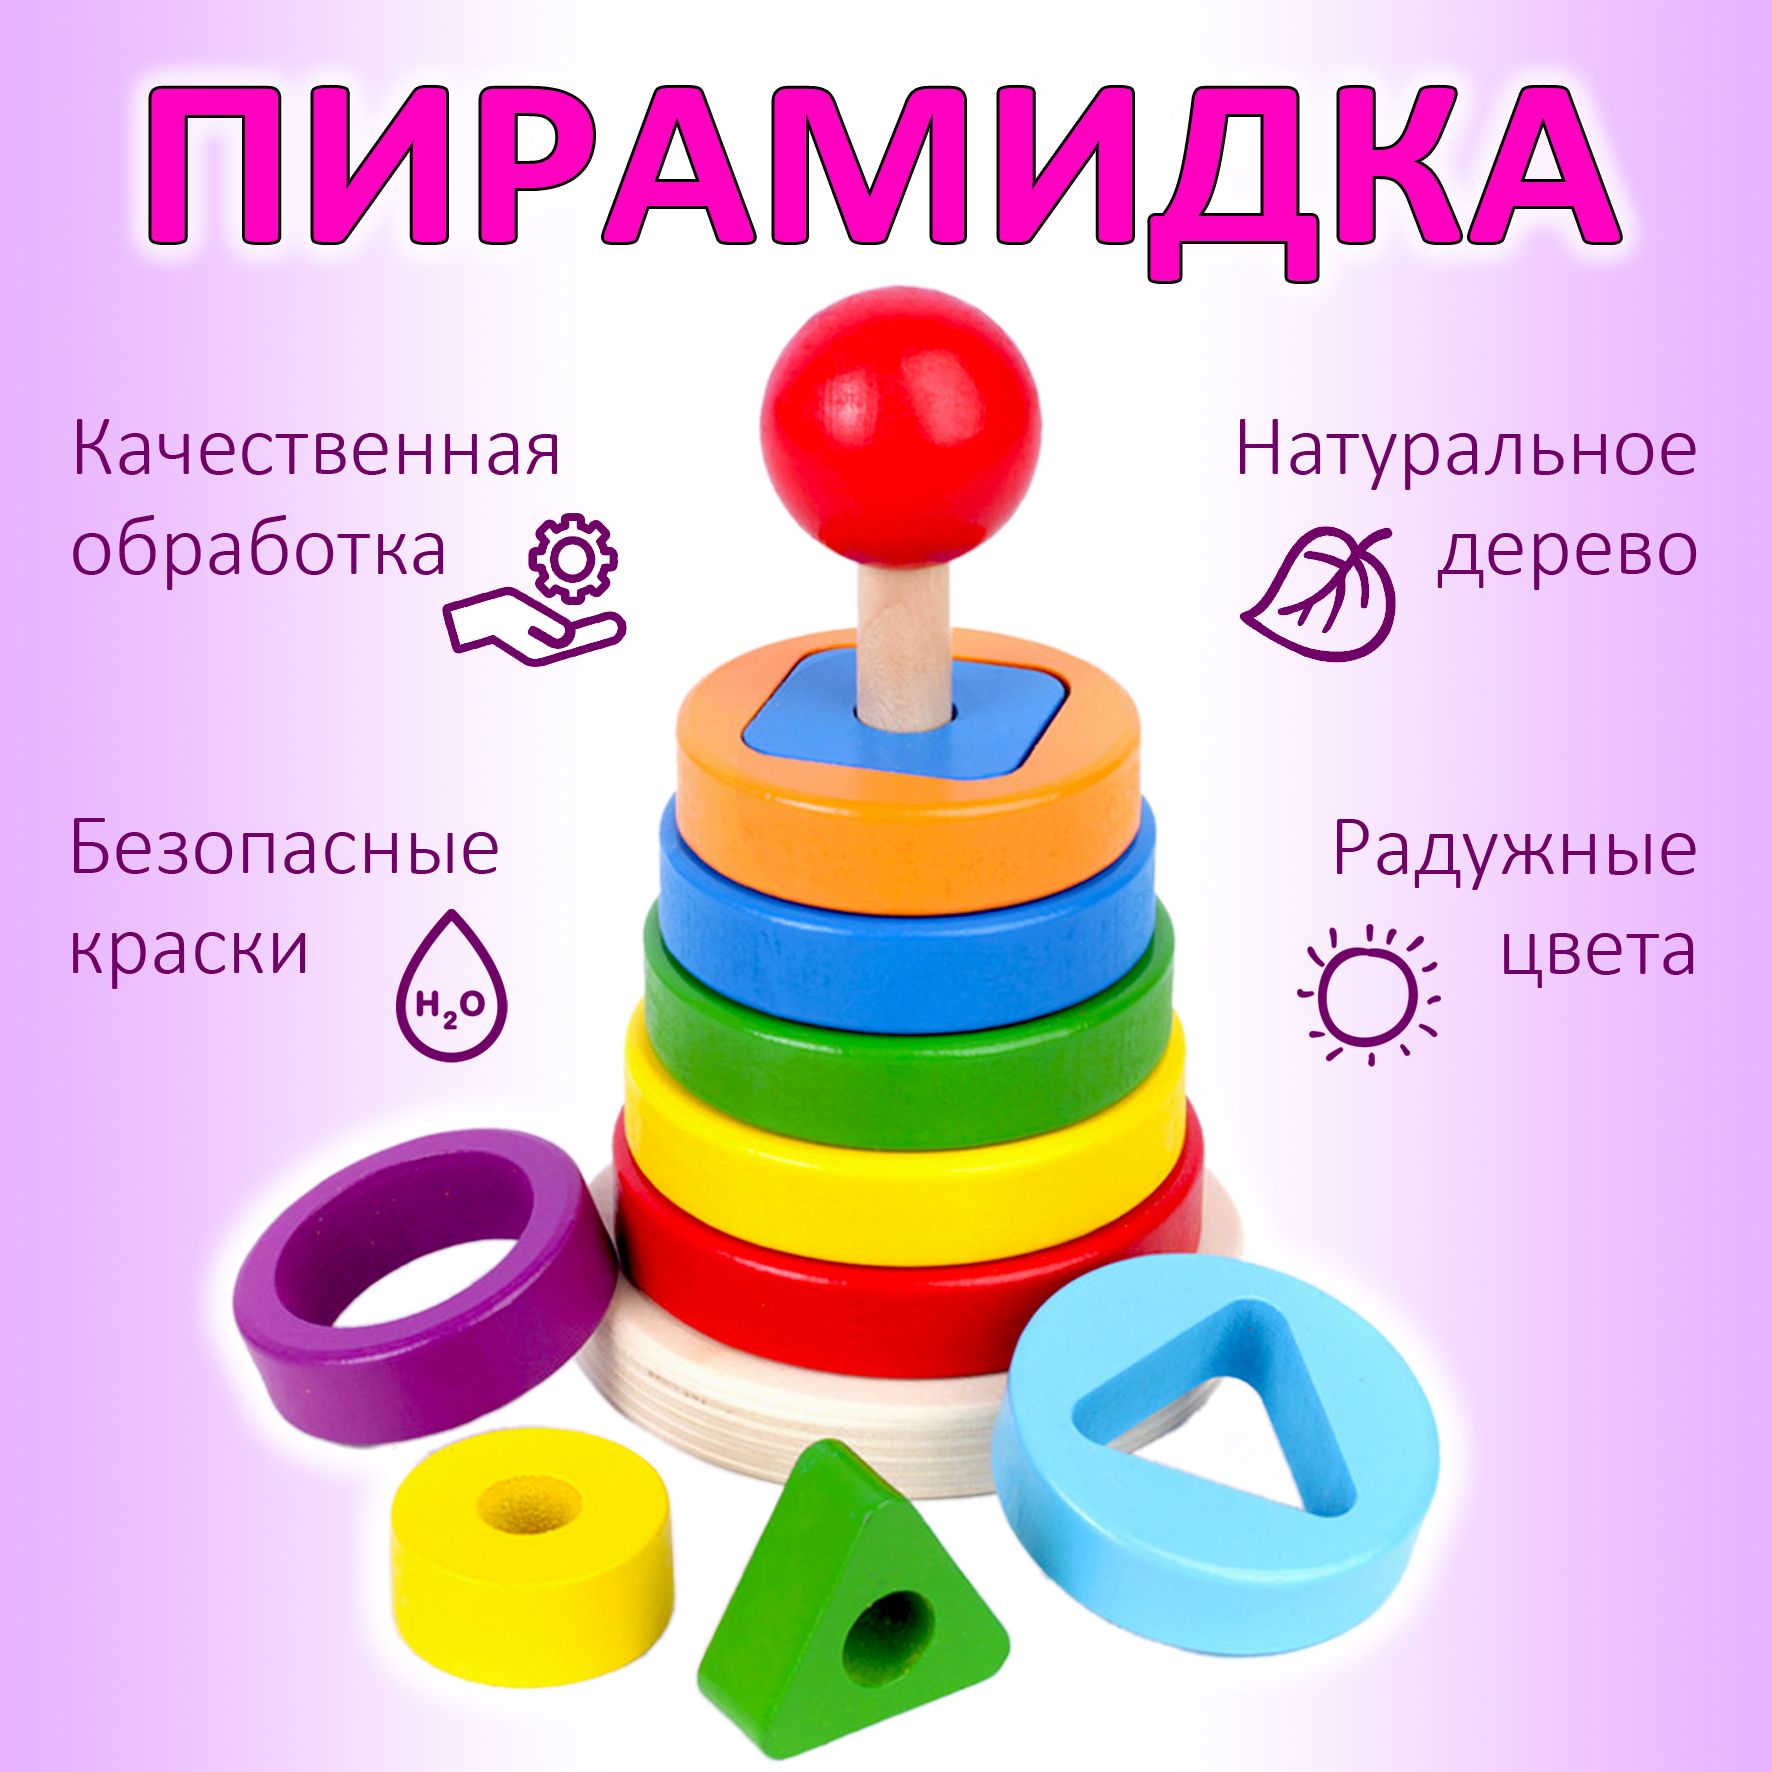 Пирамидка Igrushka48 Деревянная с геометрическими фигурами деревянная игрушка plan toys сортер доска с геометрическими фигурами